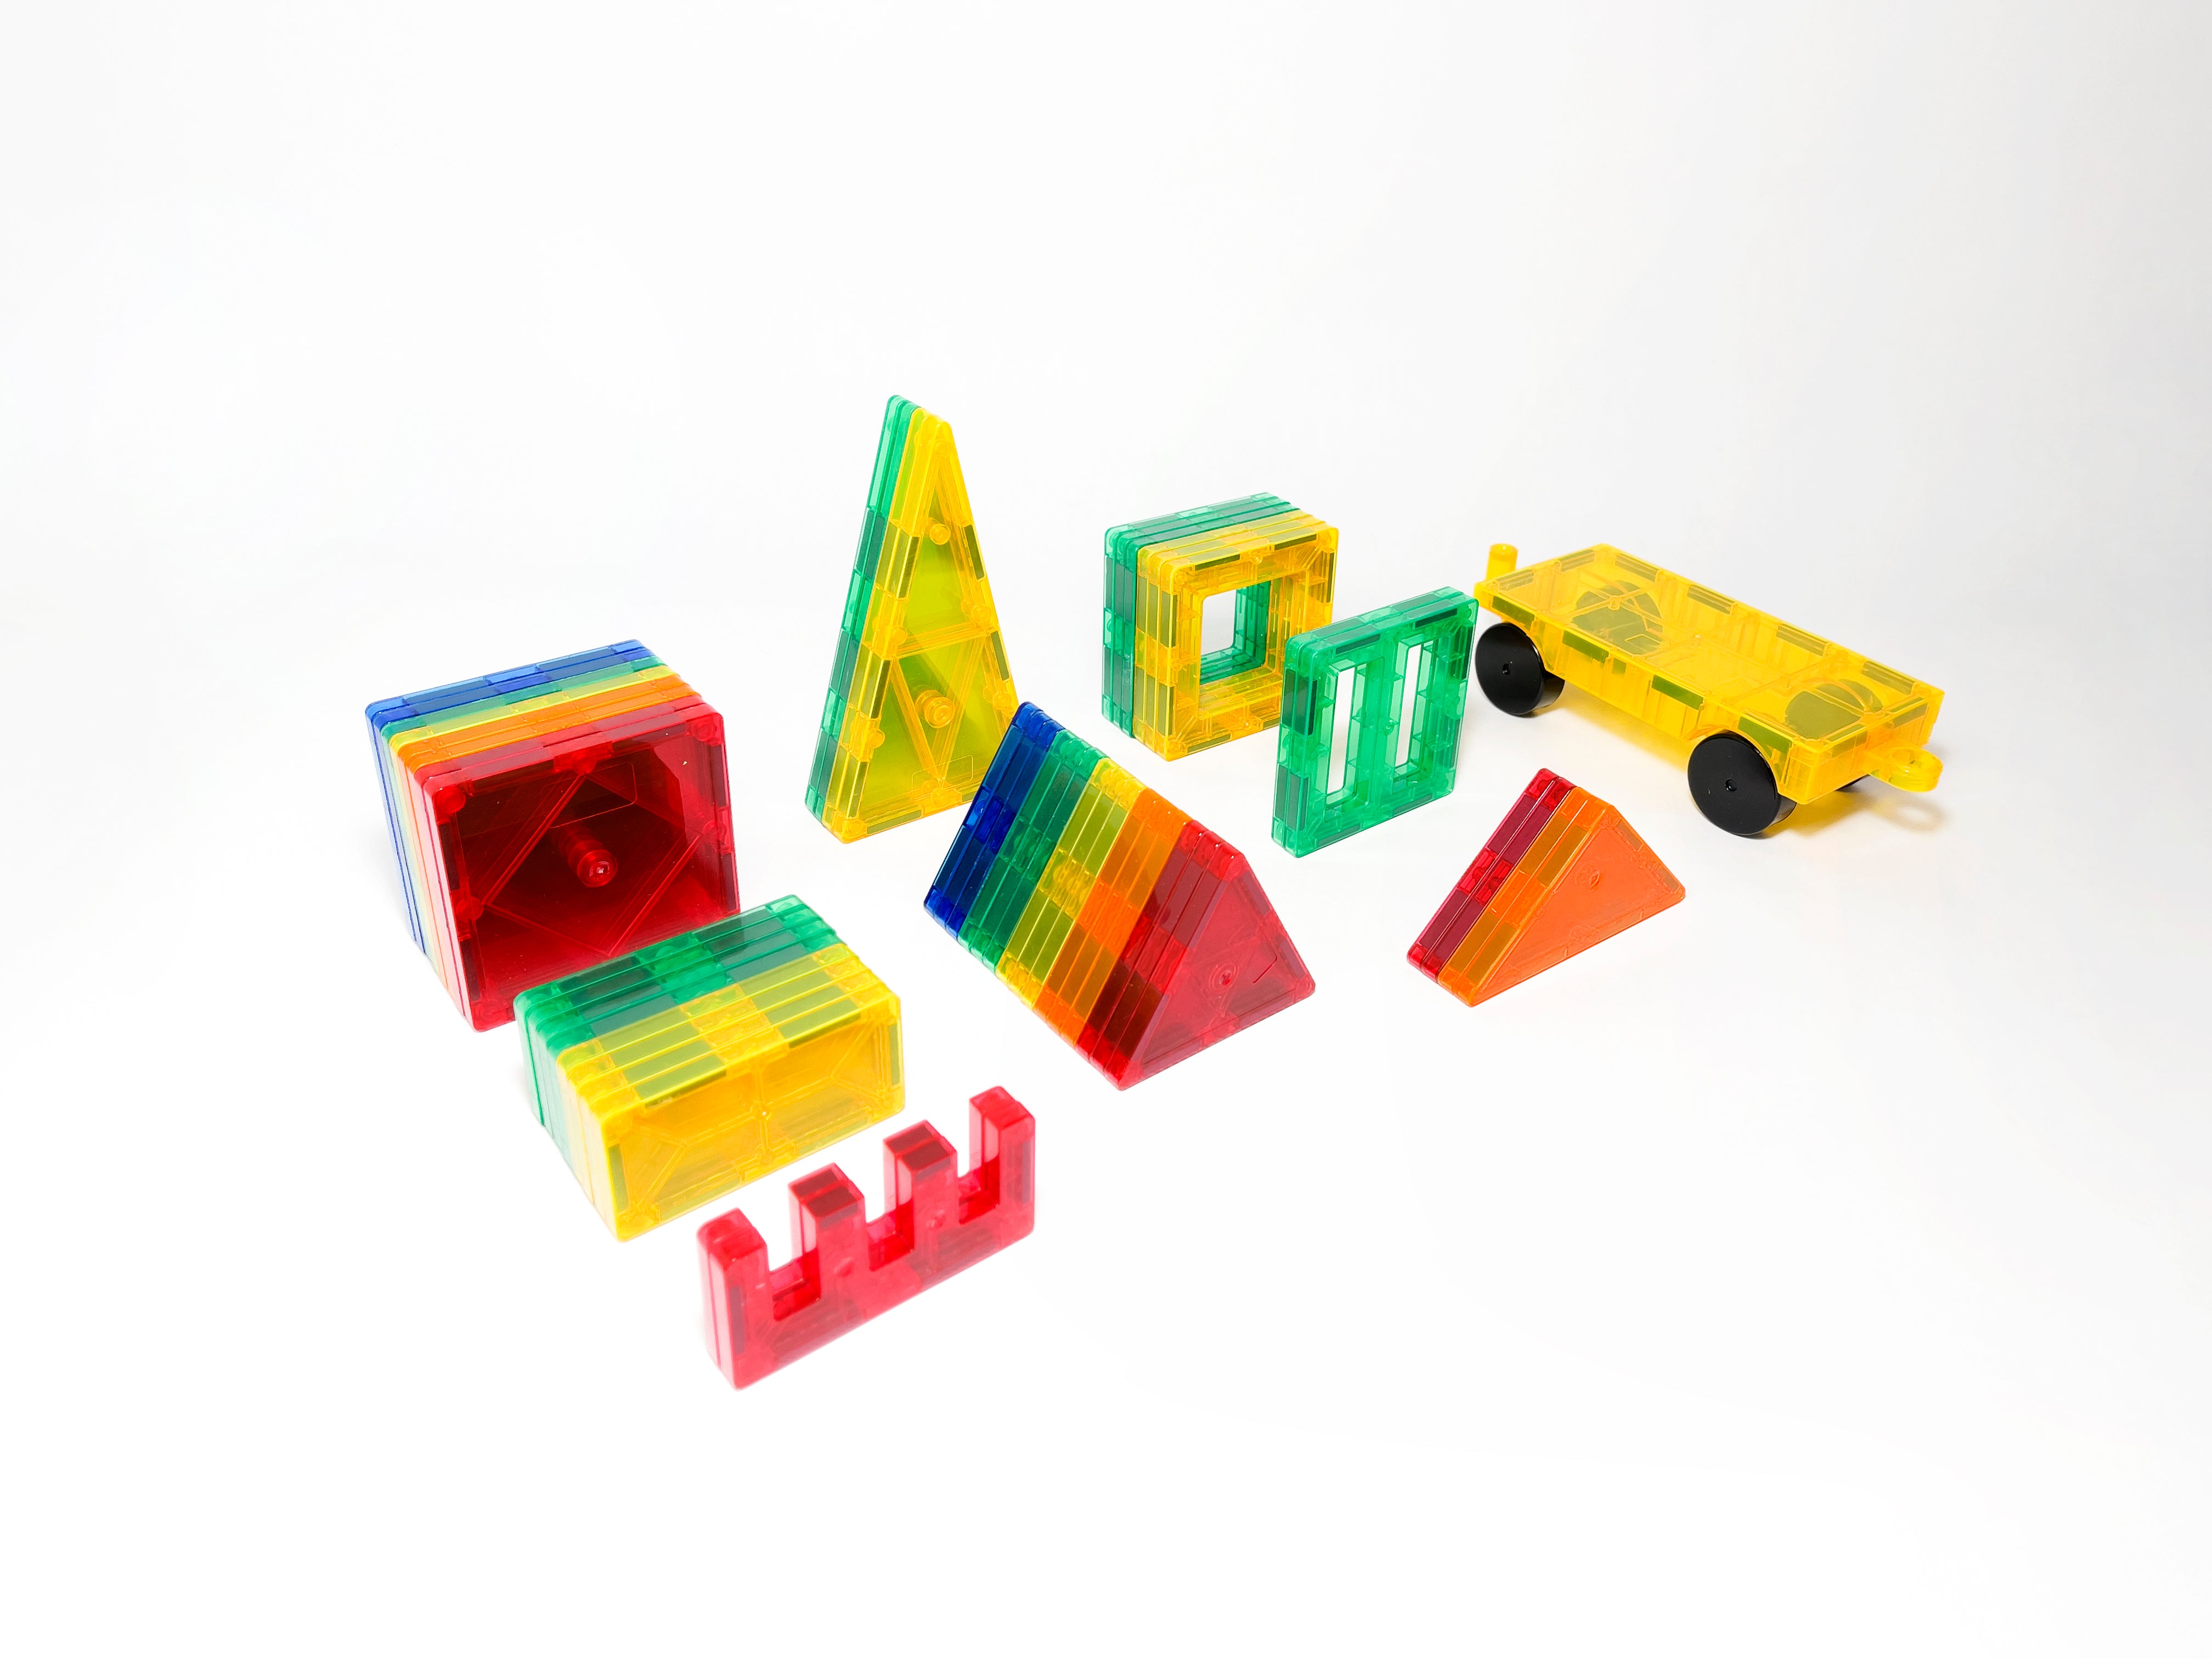 Magna-Tiles Stardust 15 Piece Set - Imagination Toys